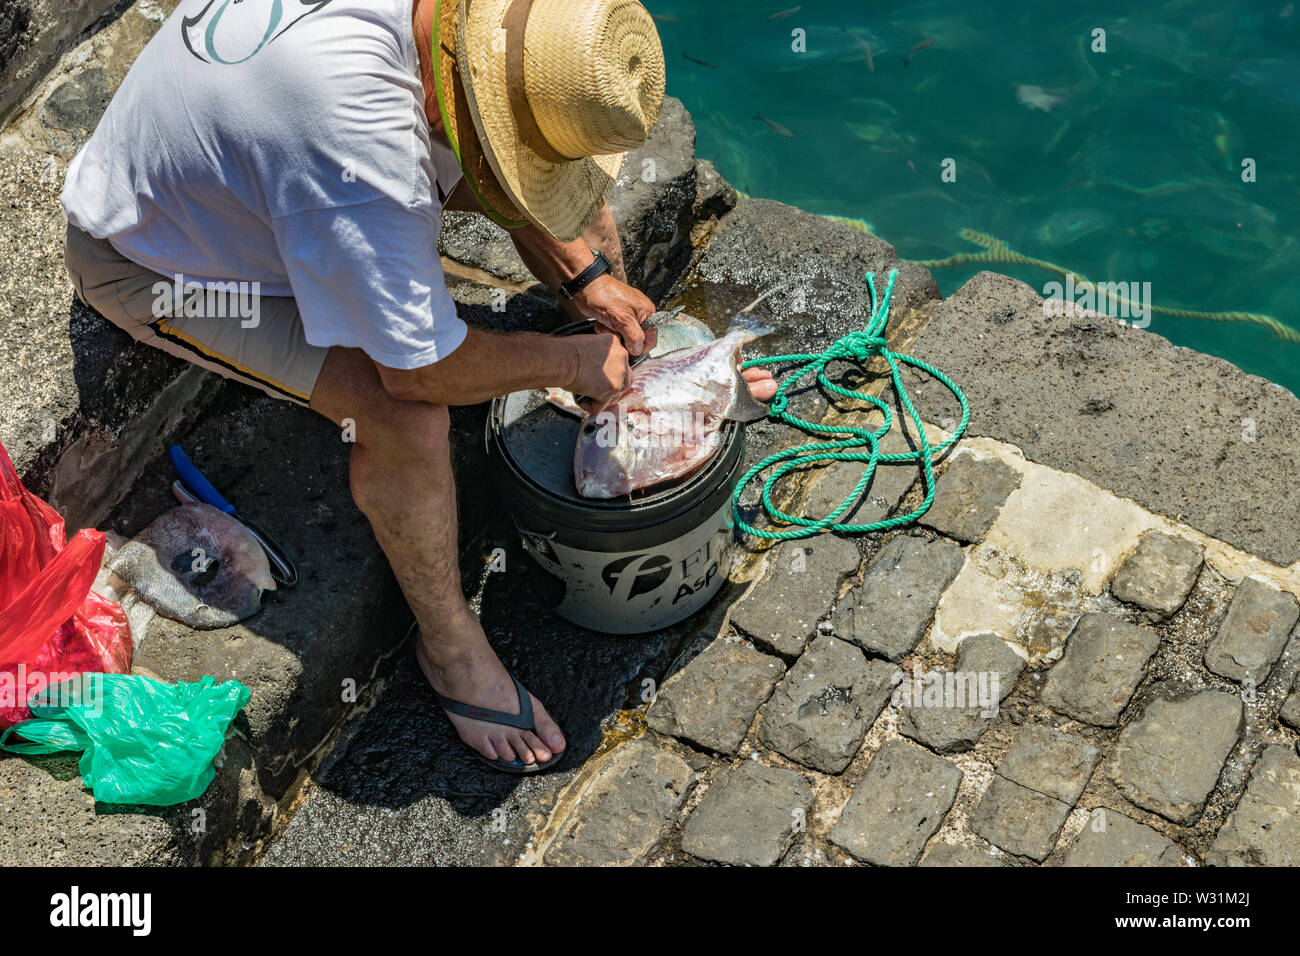 Un pêcheur après le succès de la pêche, à l'aide d'un couteau pour vider et nettoyer les poissons fraîchement pêchés, au-dessus de la benne d'alimentation. Jour ensoleillé chaud et doux. Vieux port, h Banque D'Images